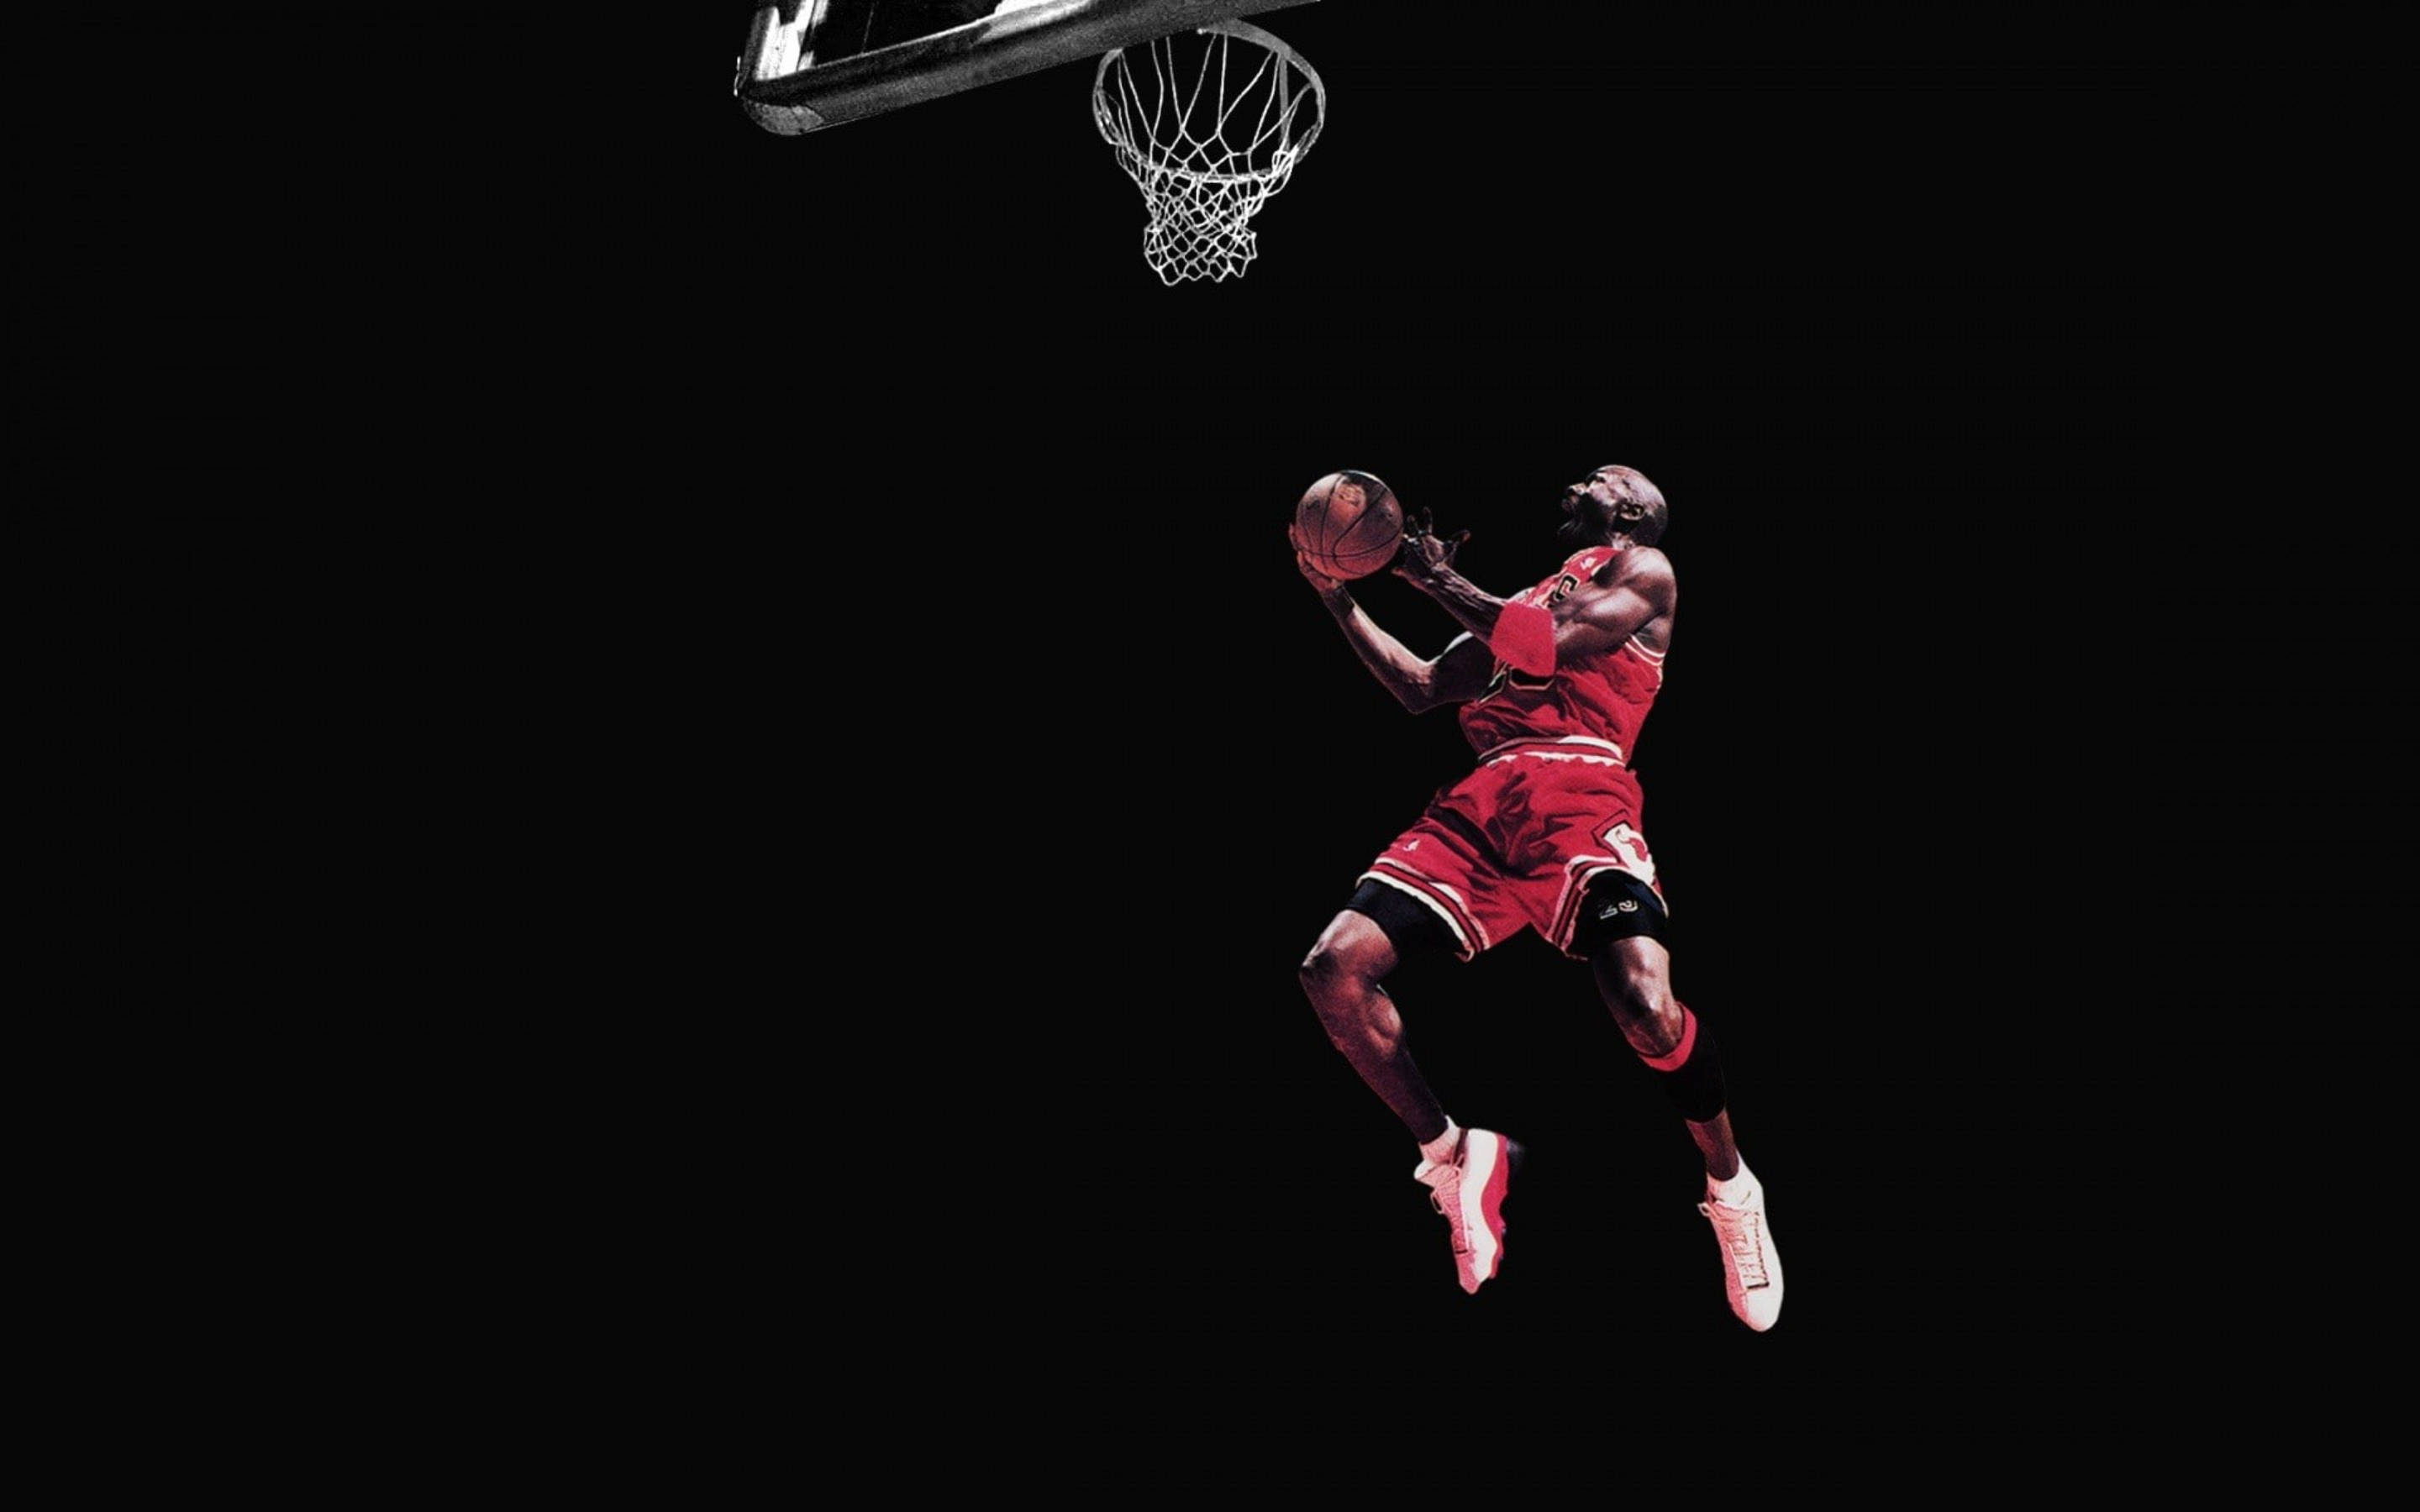 Cool Jordan In Mid-air Moment Wallpaper